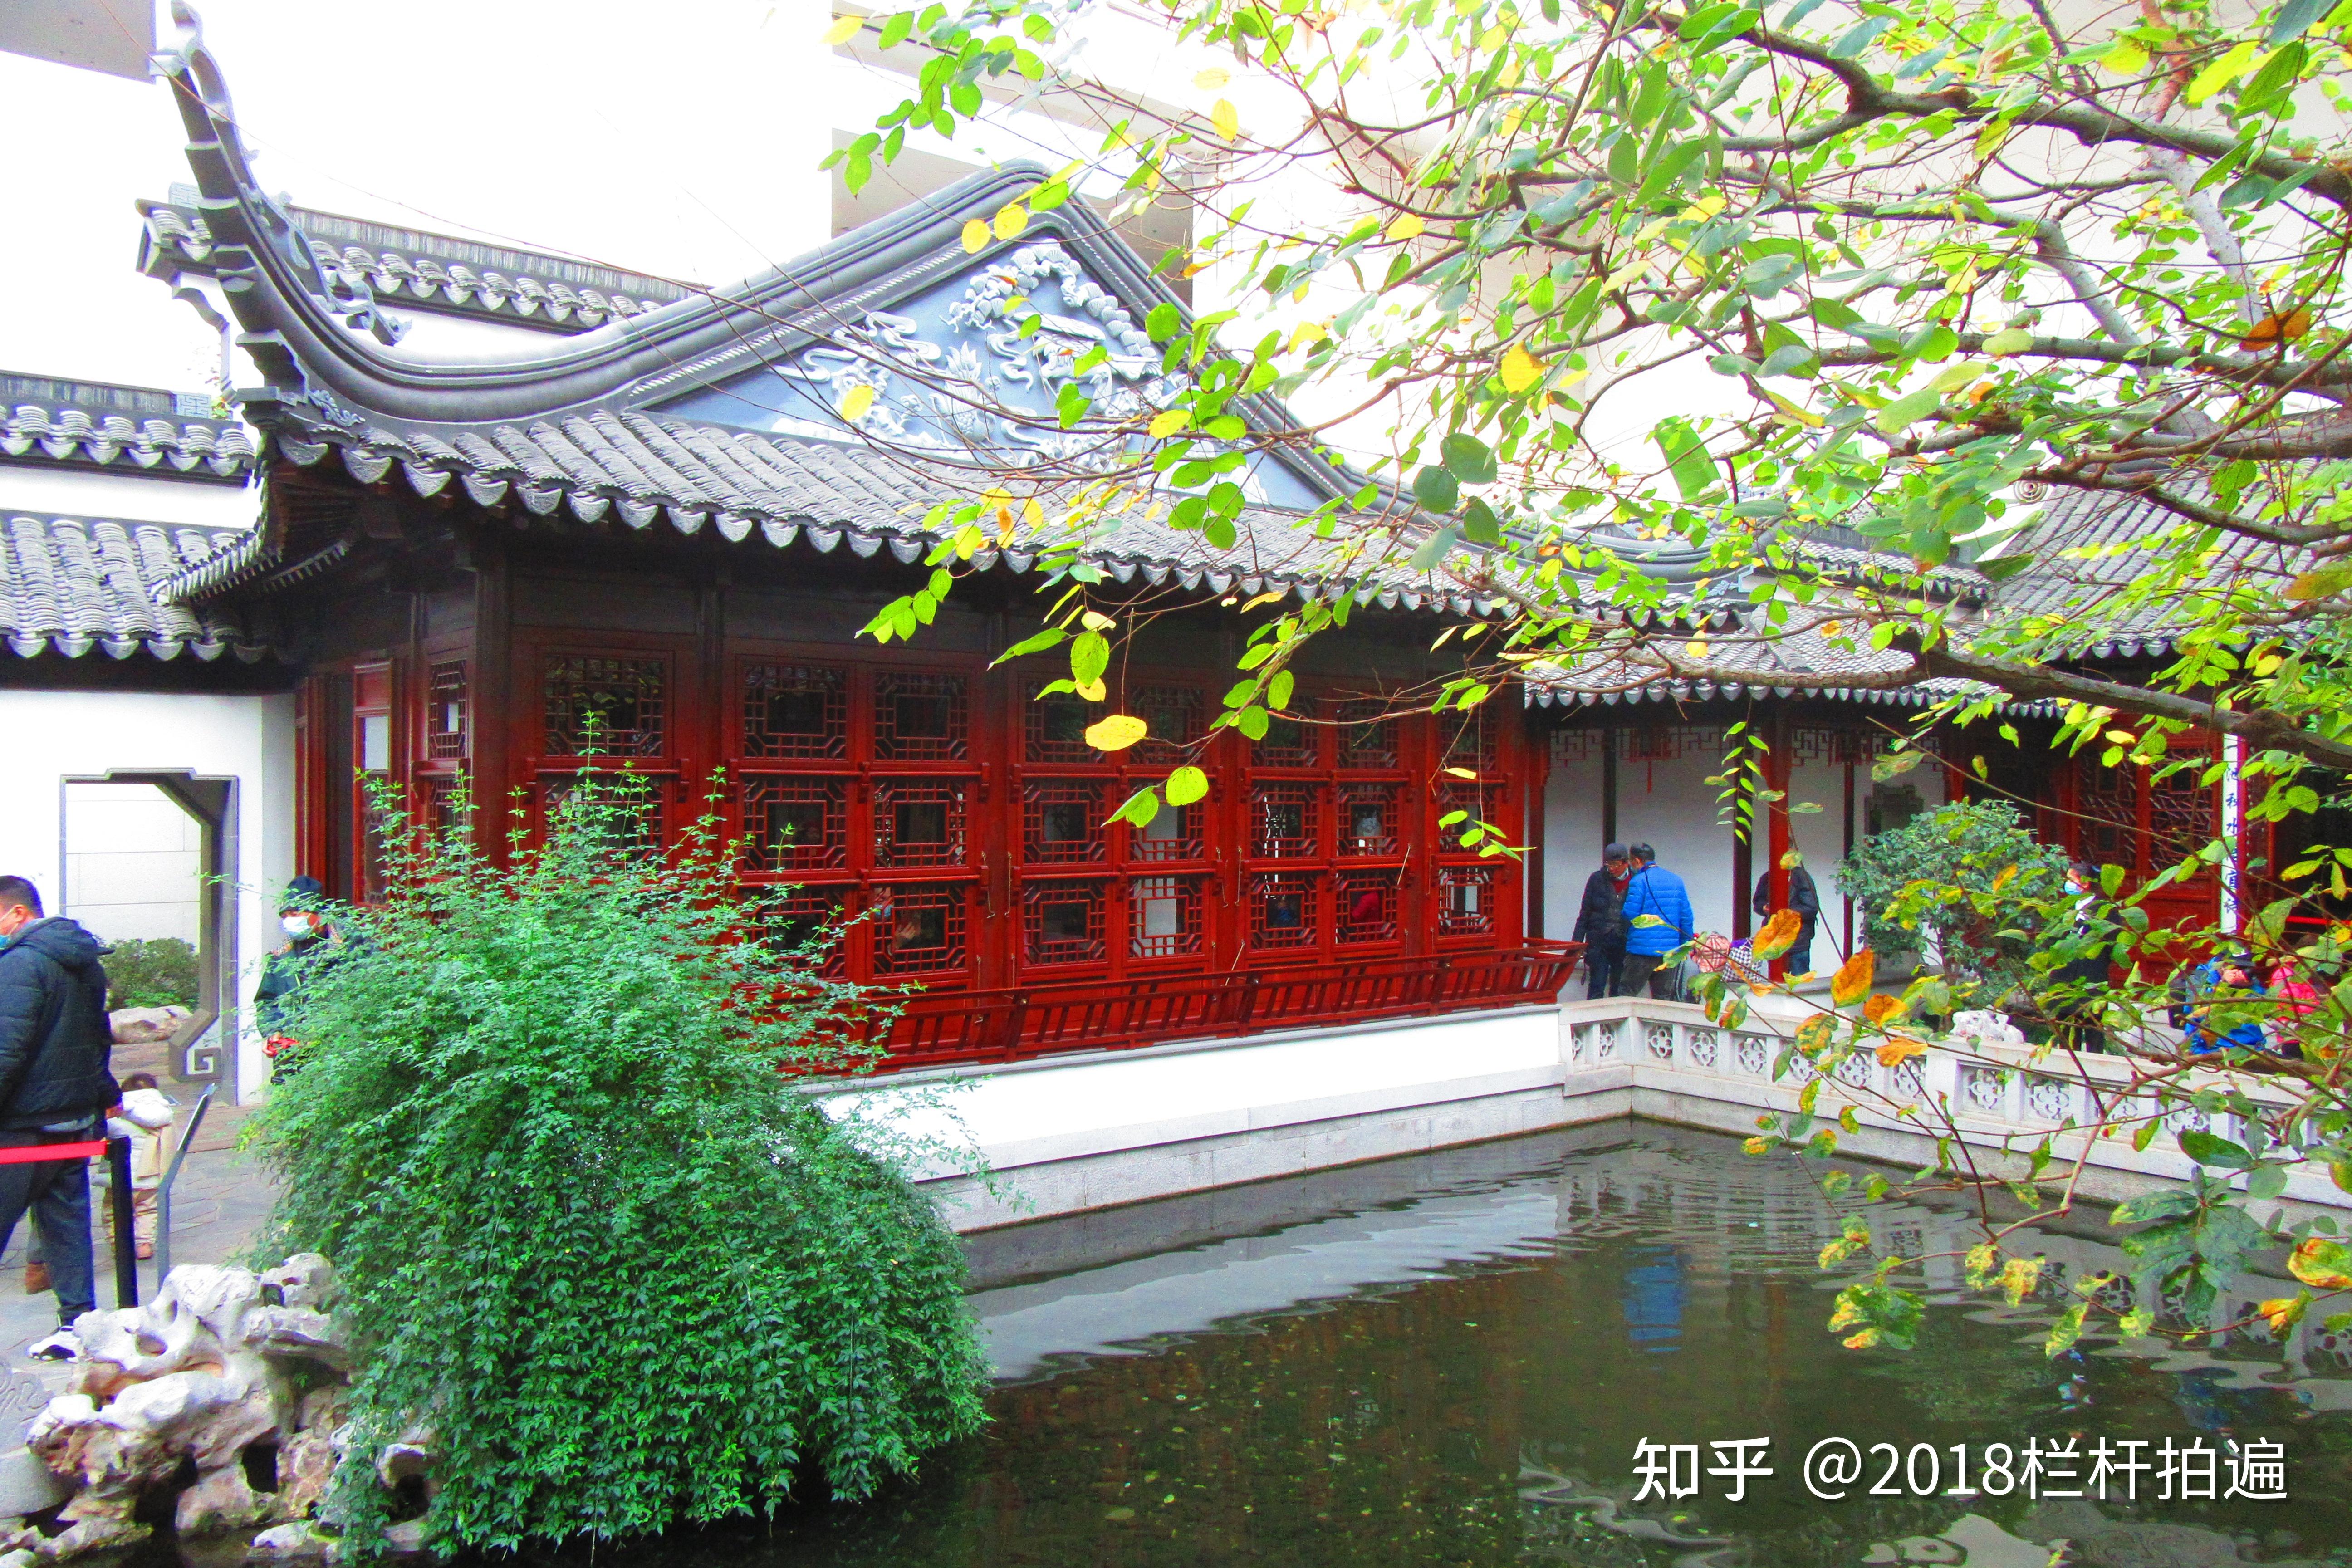 北京:中国园林博物馆(4) 